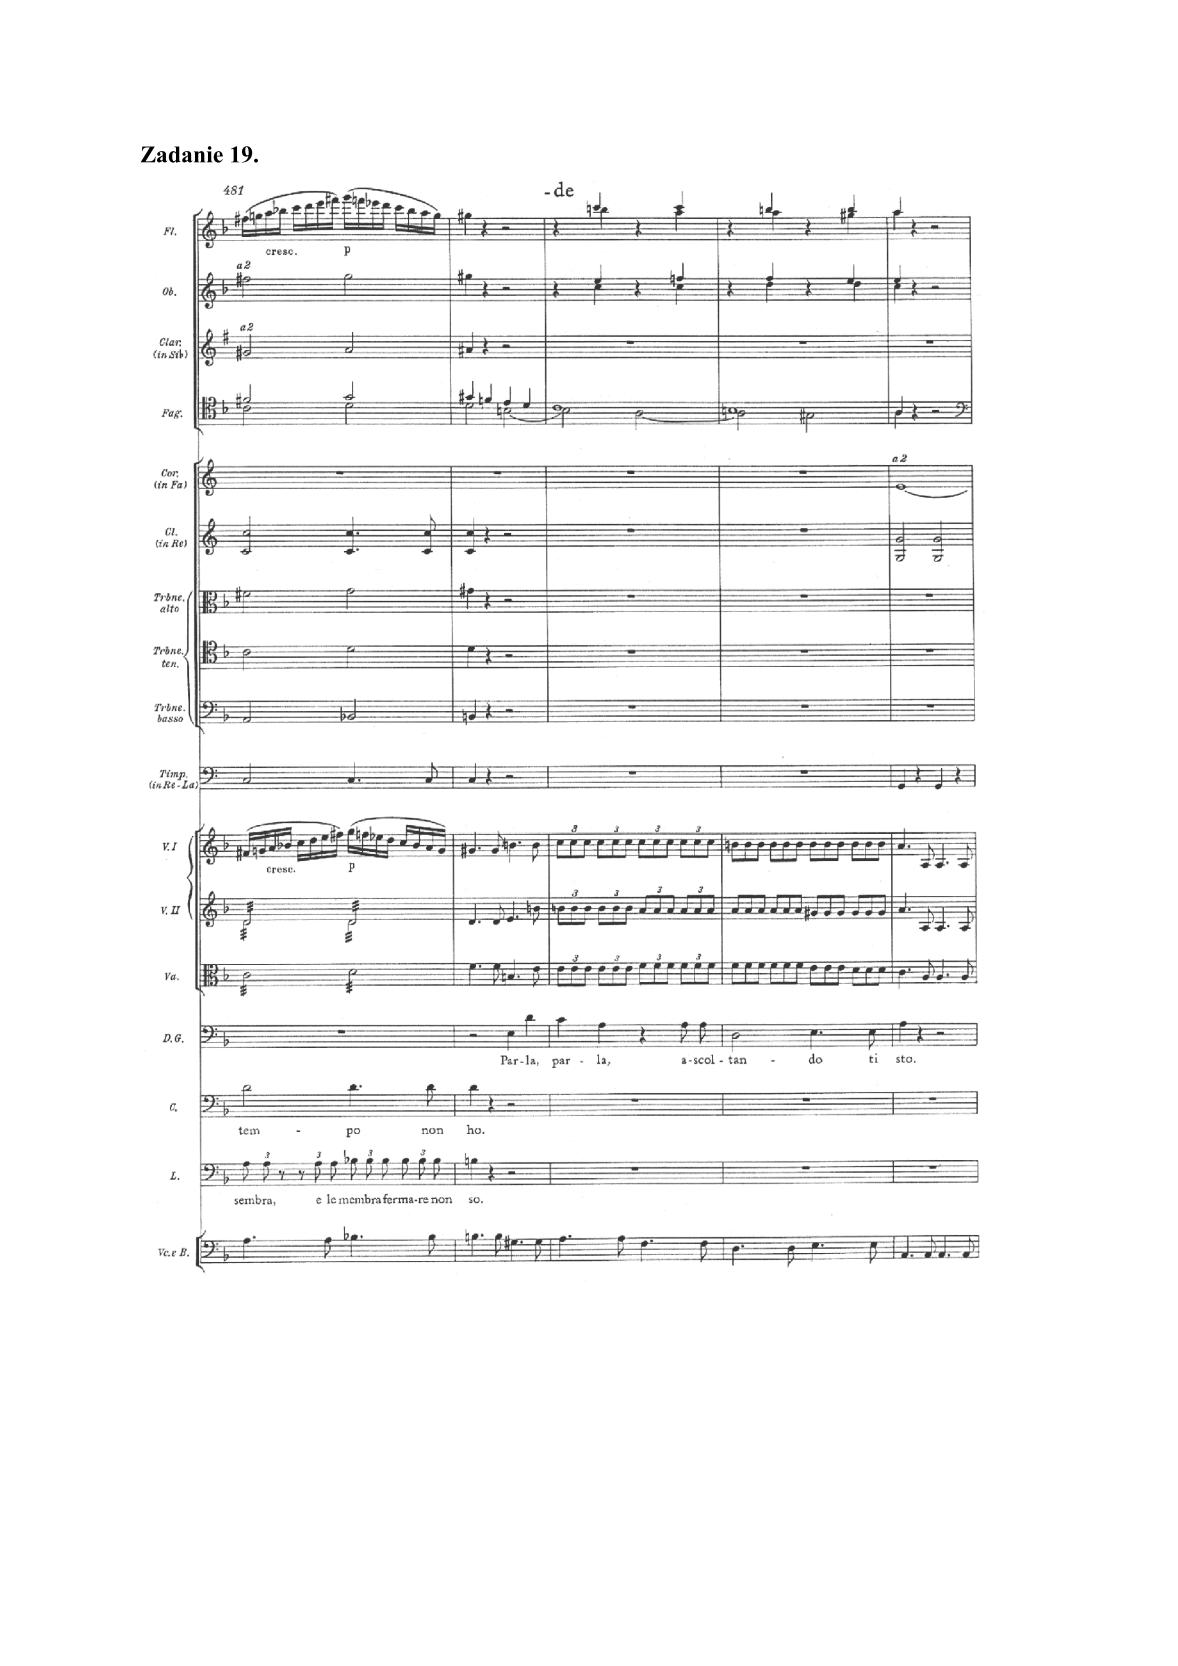 historia-muzyki-przykladowe-nuty-poziom-rozszerzony-matura-2014-str.24